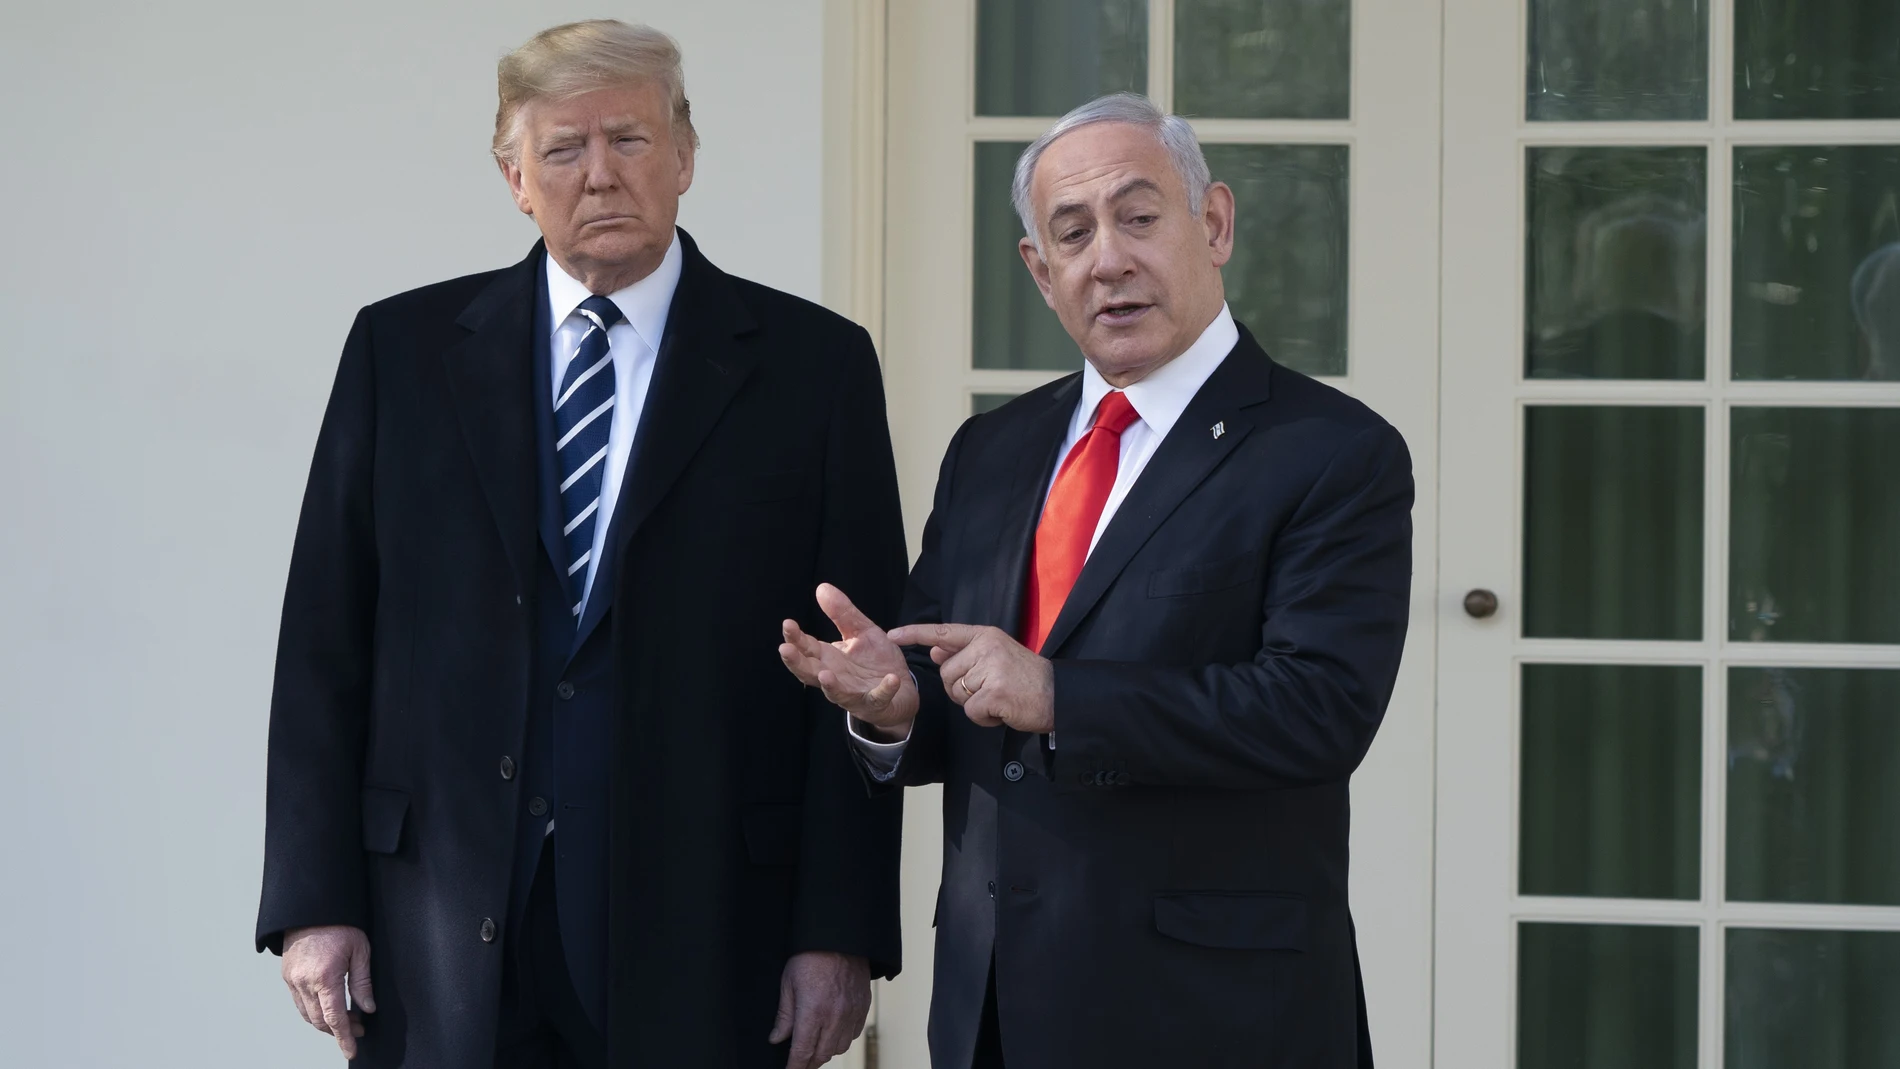 Trump greets Netanyahu to the White House